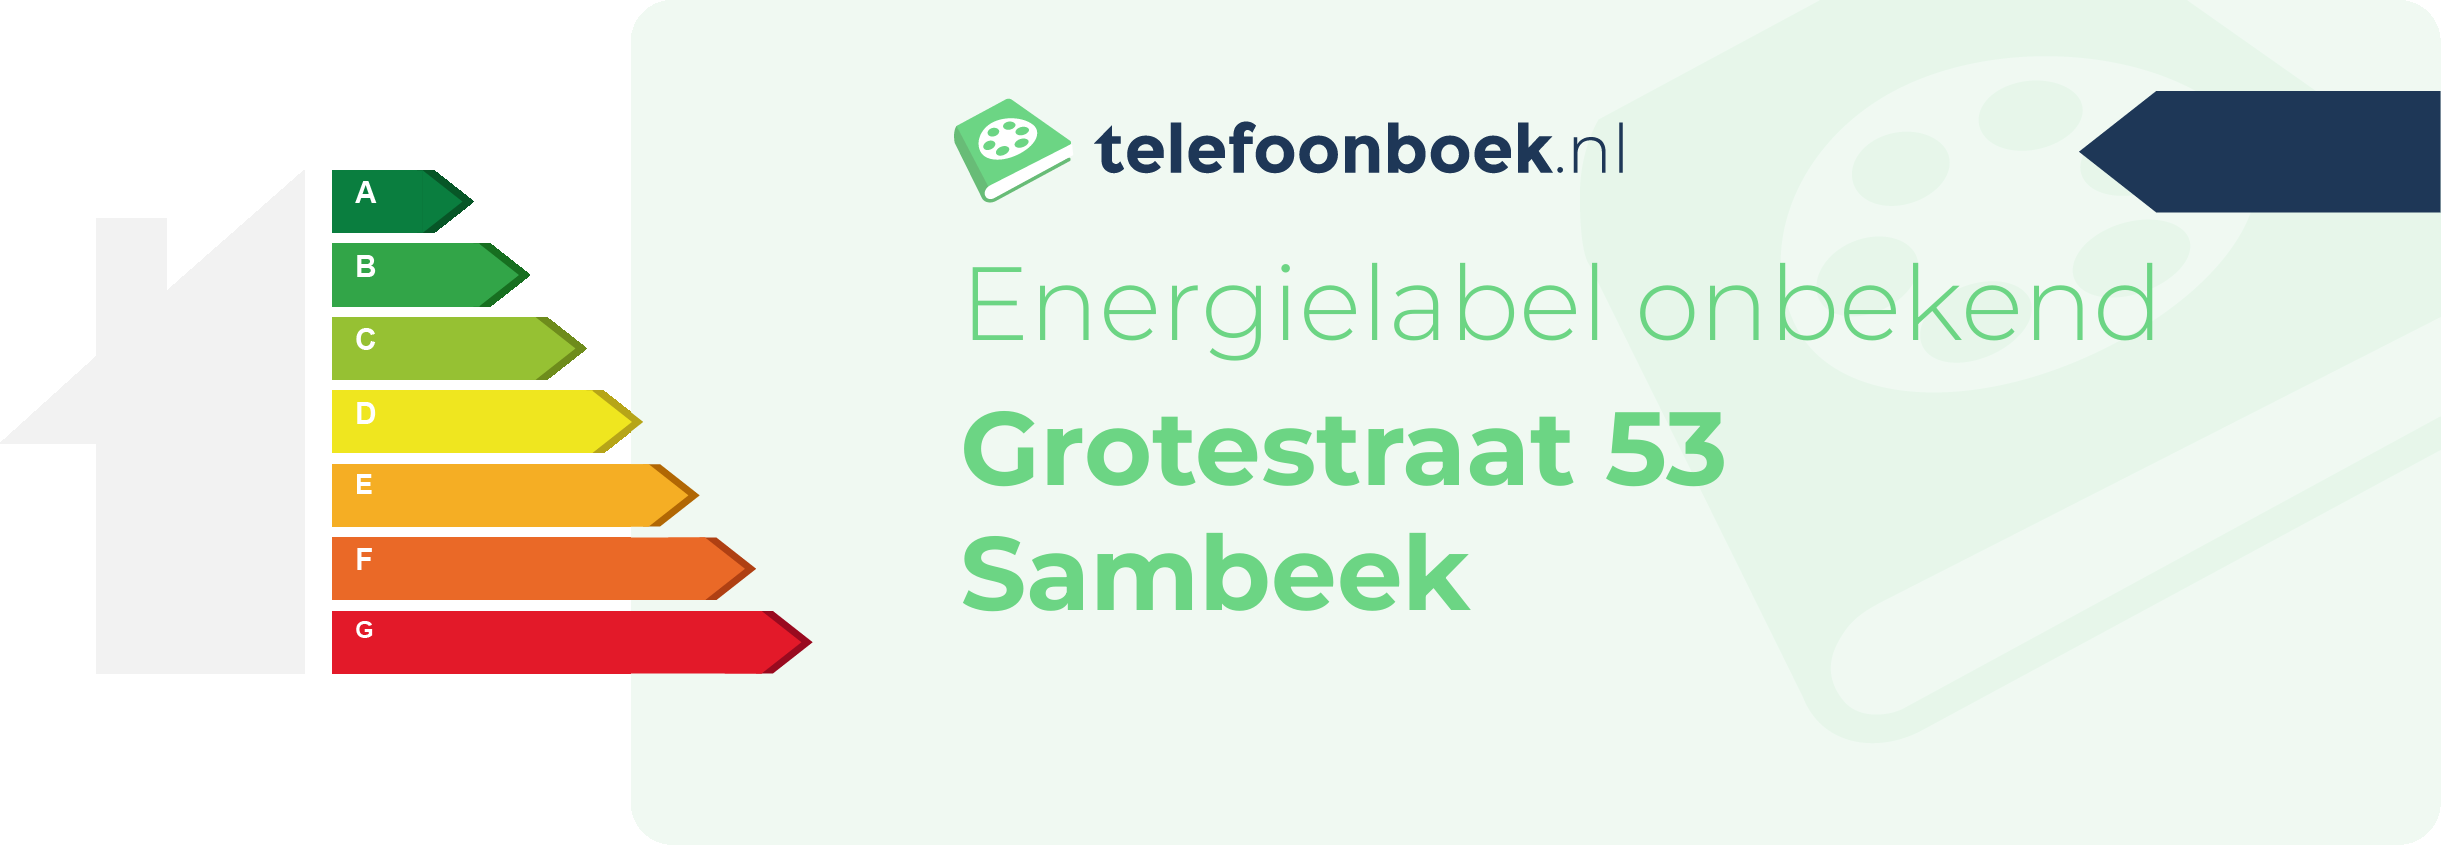 Energielabel Grotestraat 53 Sambeek